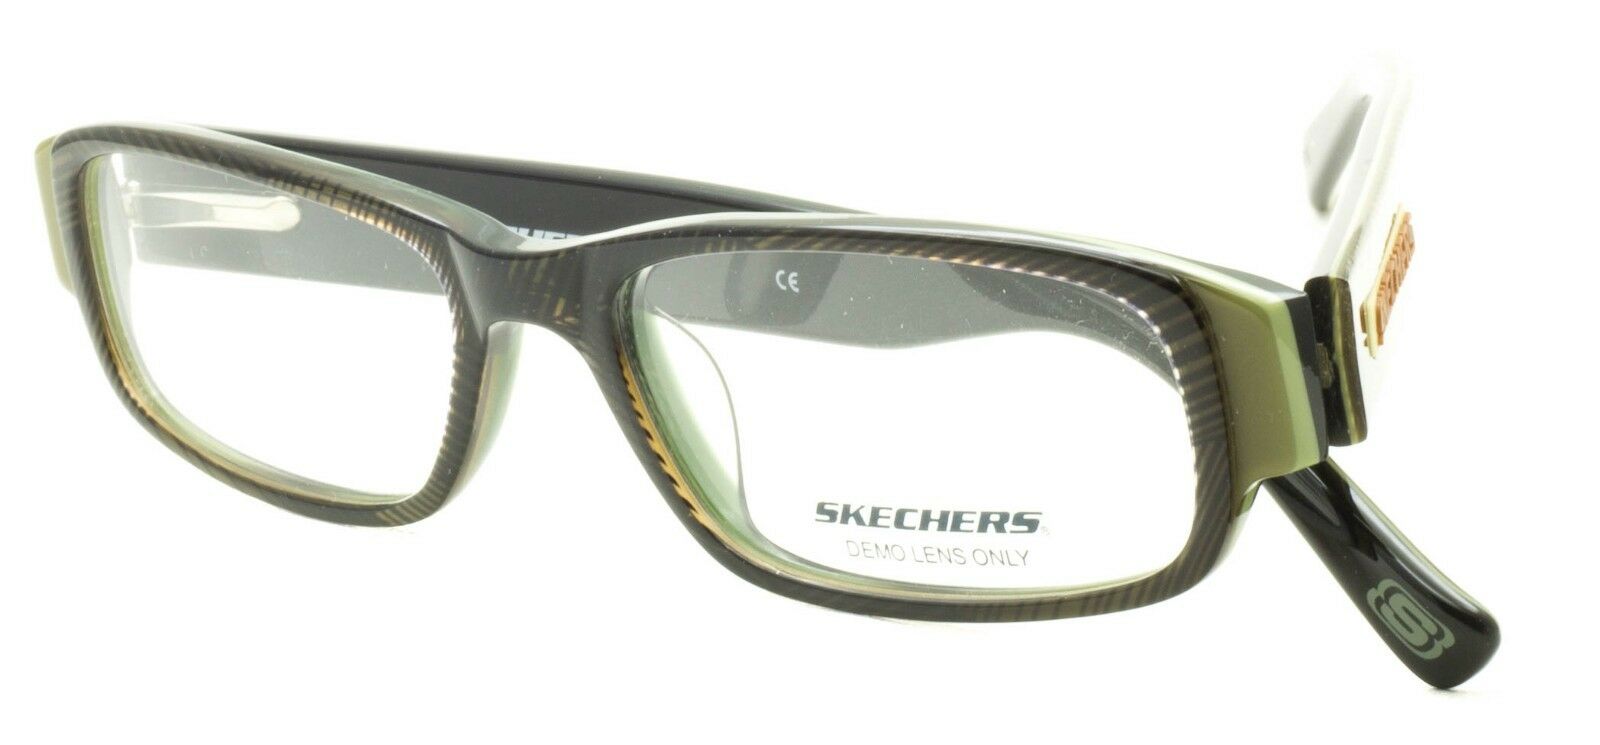 SKECHERS SK 3016 OL Eyewear FRAMES RX Optical Glasses Eyeglasses BNIB - TRUSTED